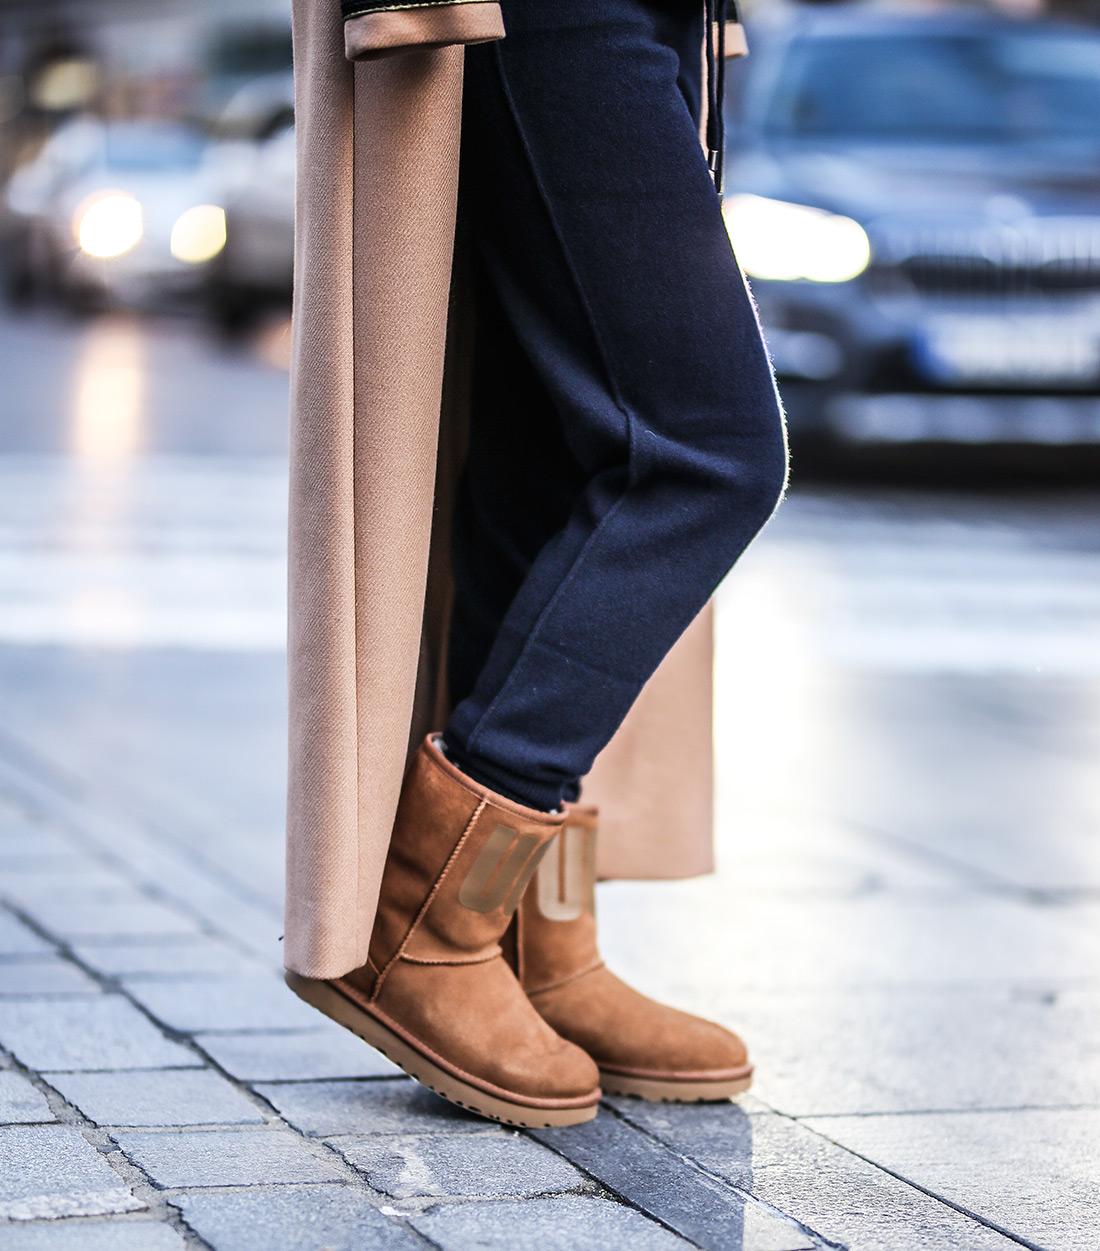 ugg čizme novi modeli najudobnija obuća gdje kupiti zagreb street style ženska moda zima 2019/20 Karla cipele Twinset odjeća Anja Sossich